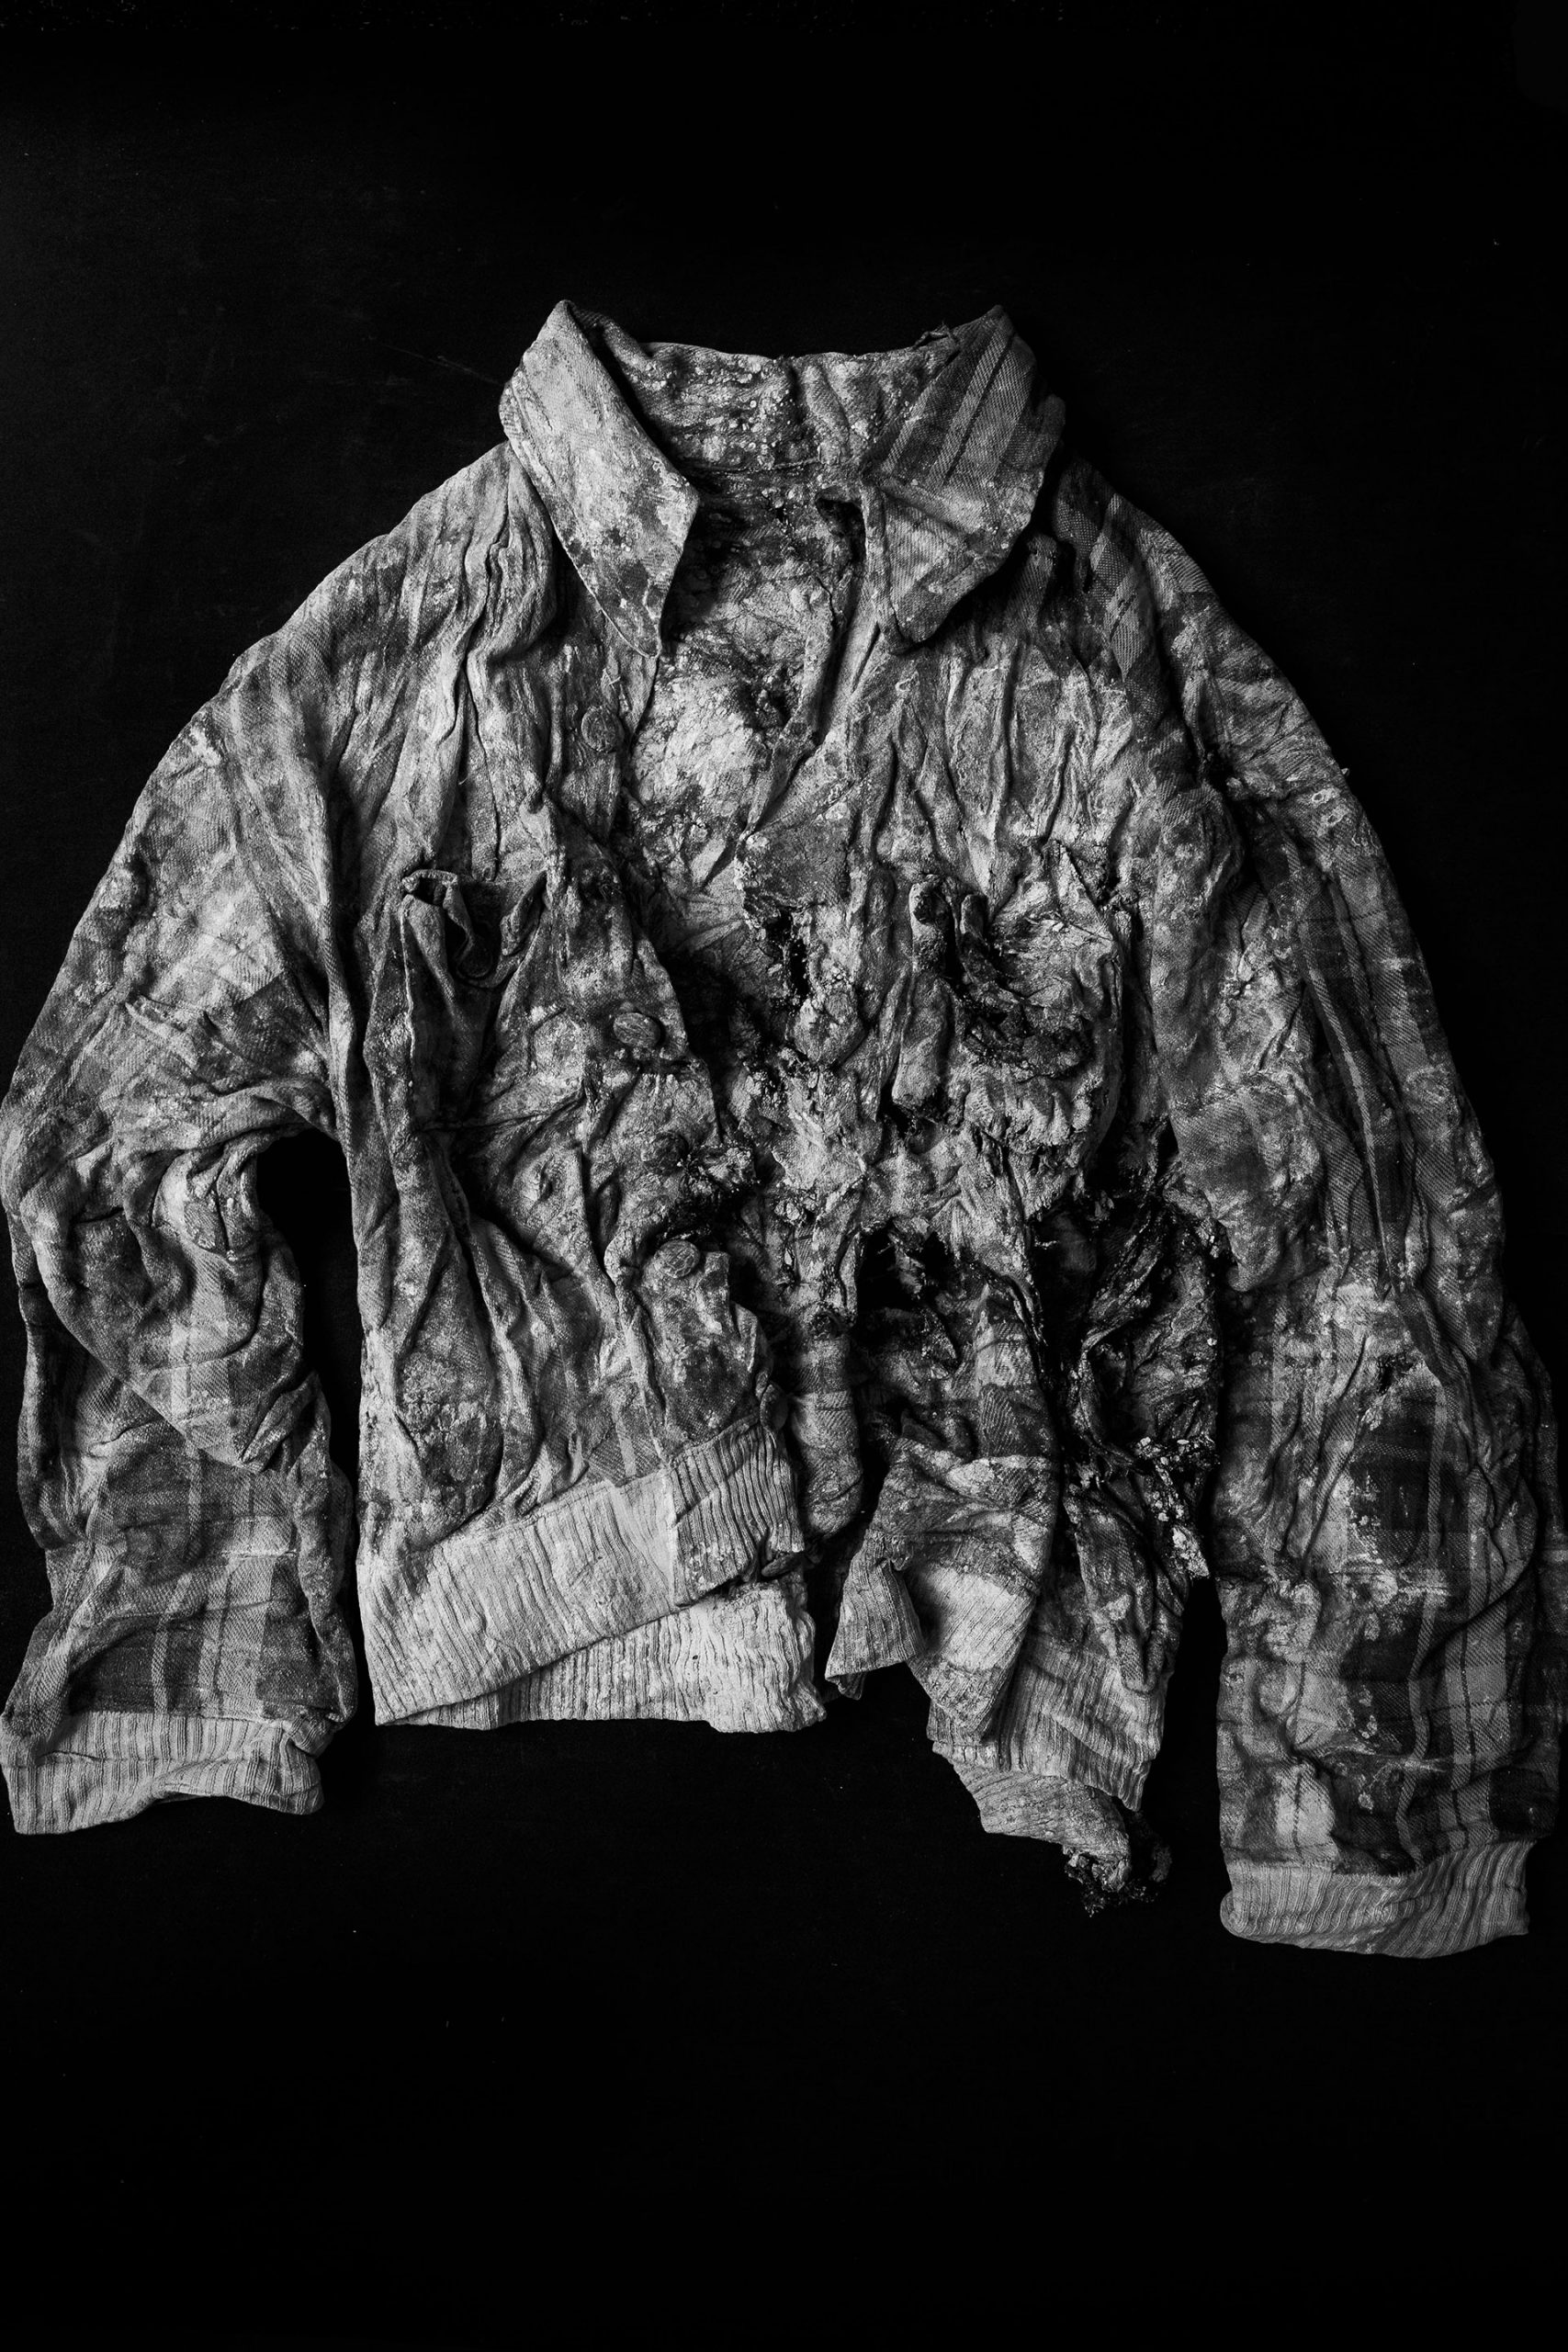 Una chaqueta encontrada en la fosa 128 de Paterna, Valencia, en mayo de 2019. La prenda pertenecía a una persona asesinada por varios impactos de bala en 1941.